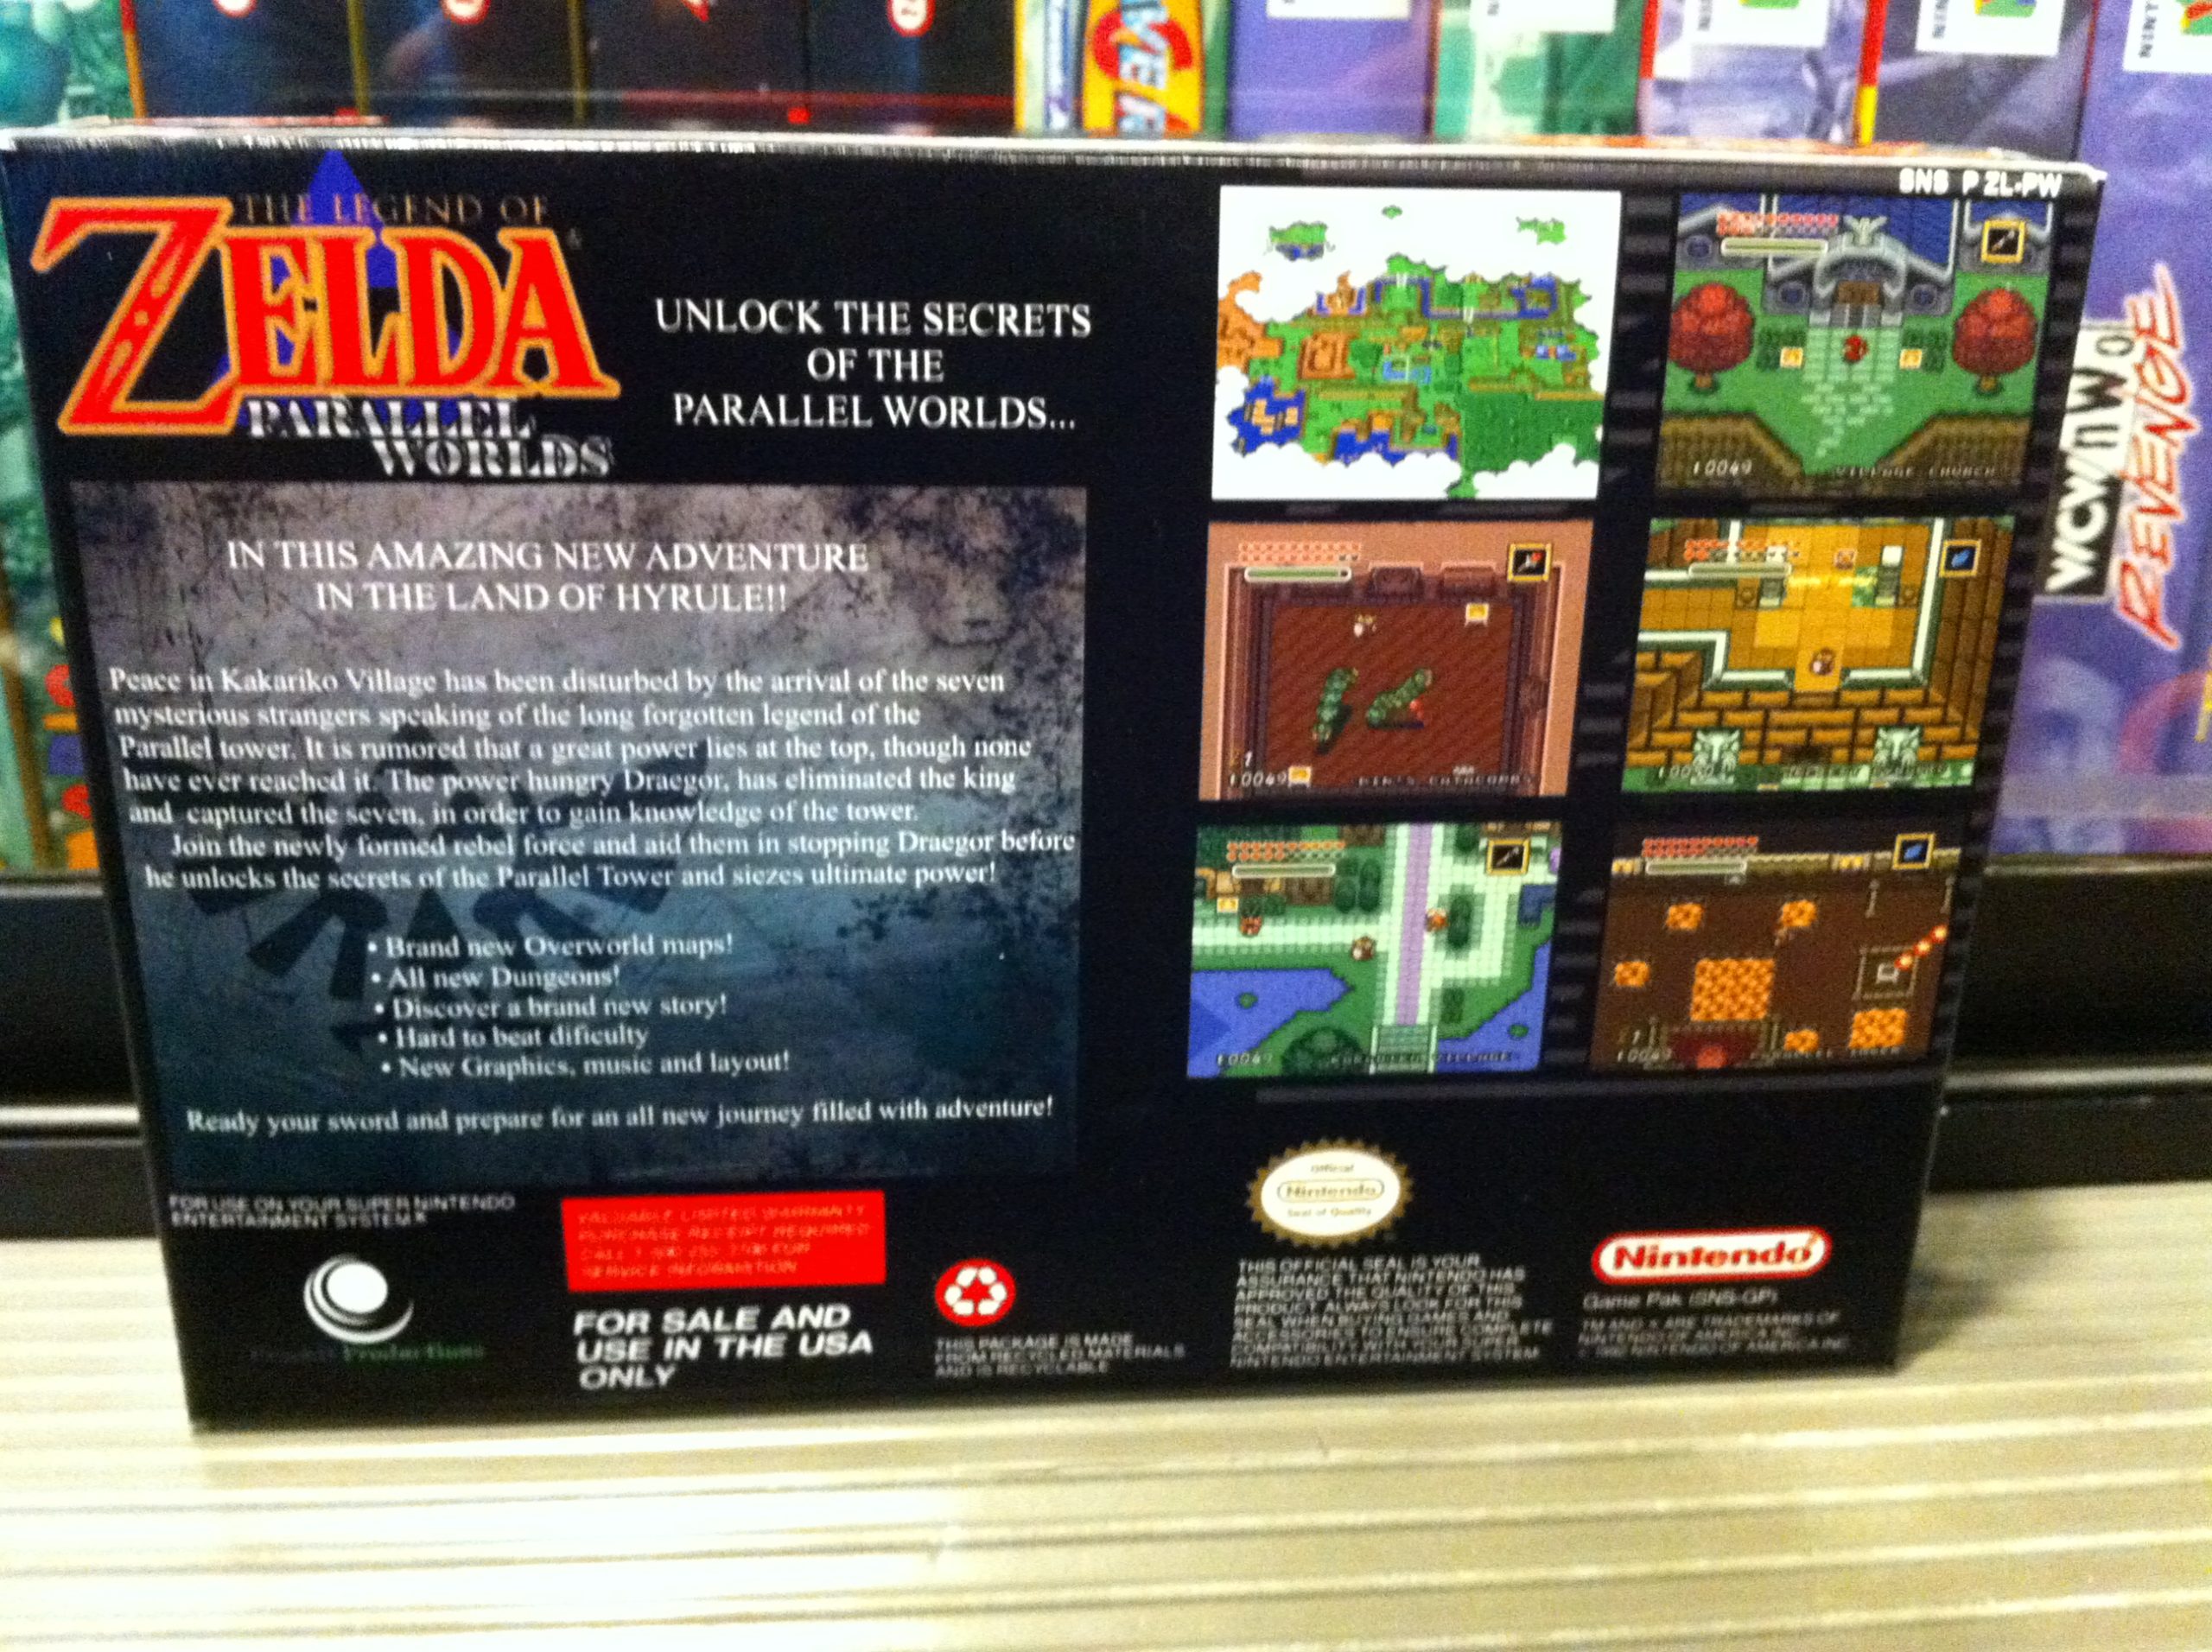 The Legend of Zelda Parallel Worlds Super Nintendo SNES Video Game